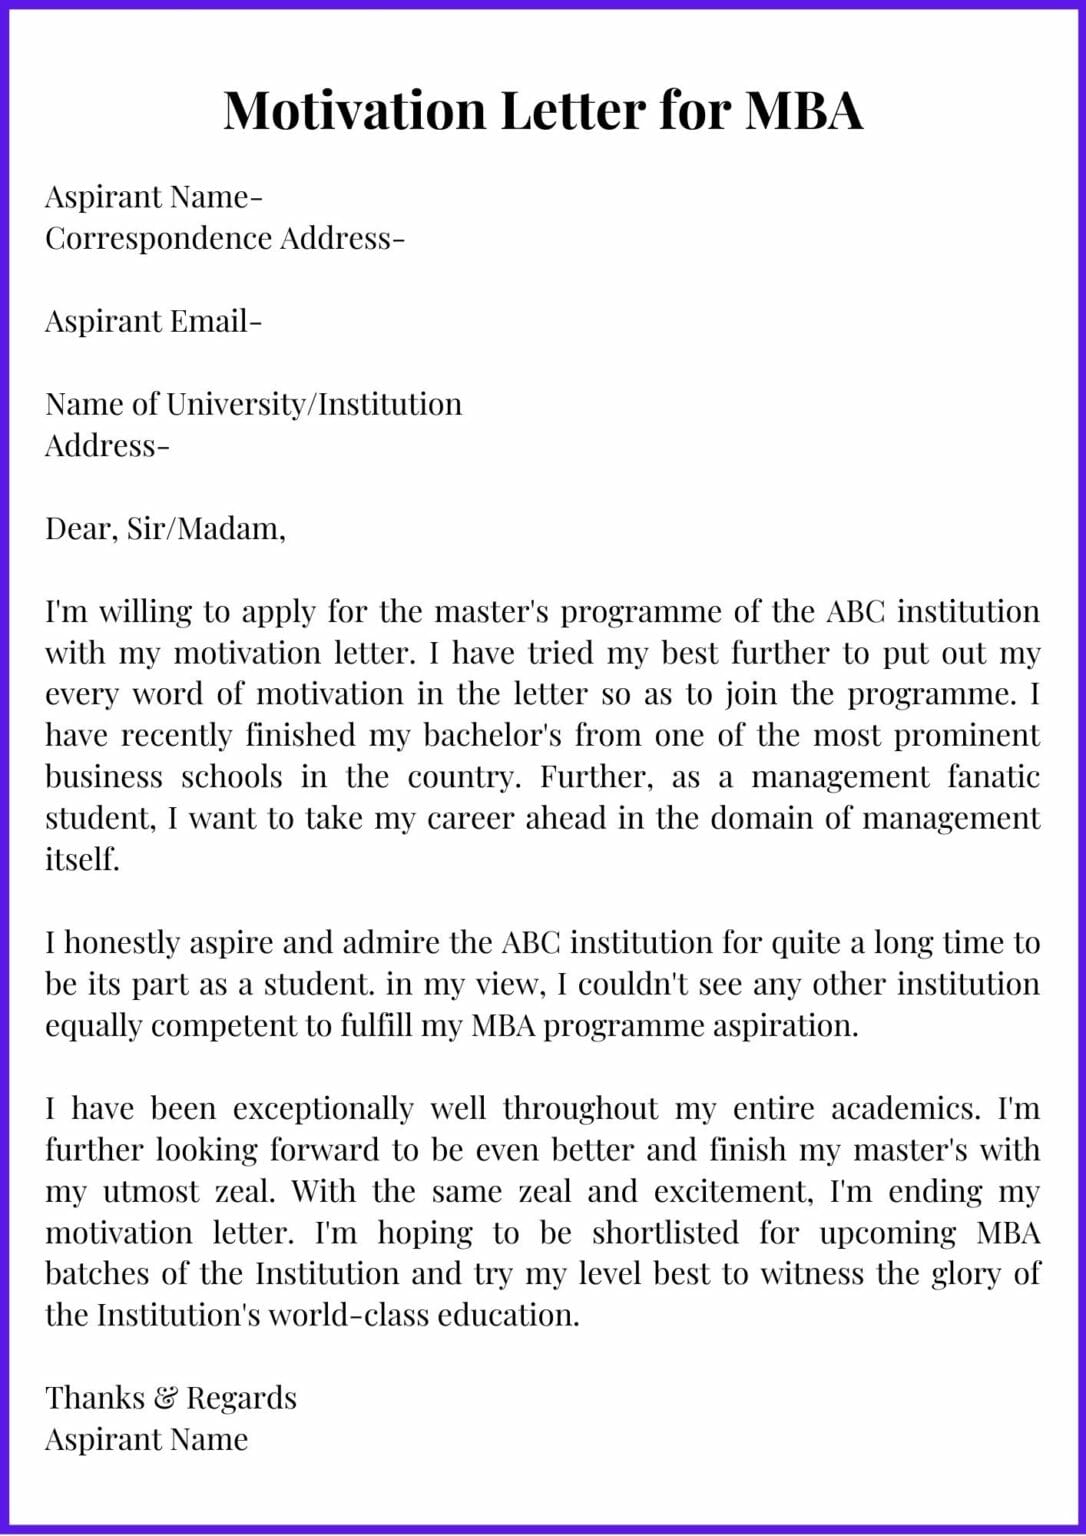 application letter for mba program